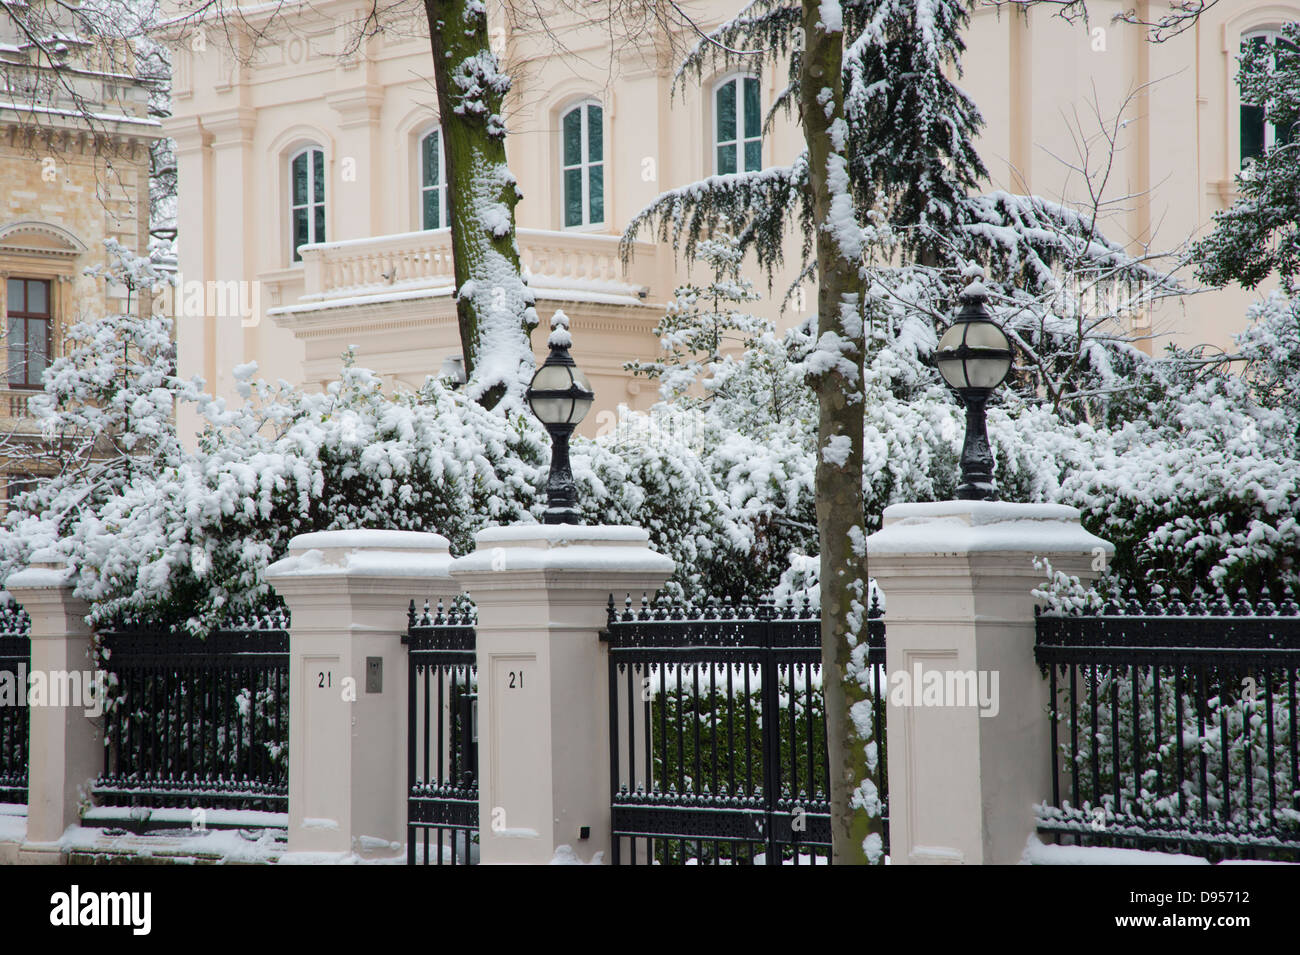 Nieve en árboles delante de mansiones en Palacio Gate, London, UK Foto de stock